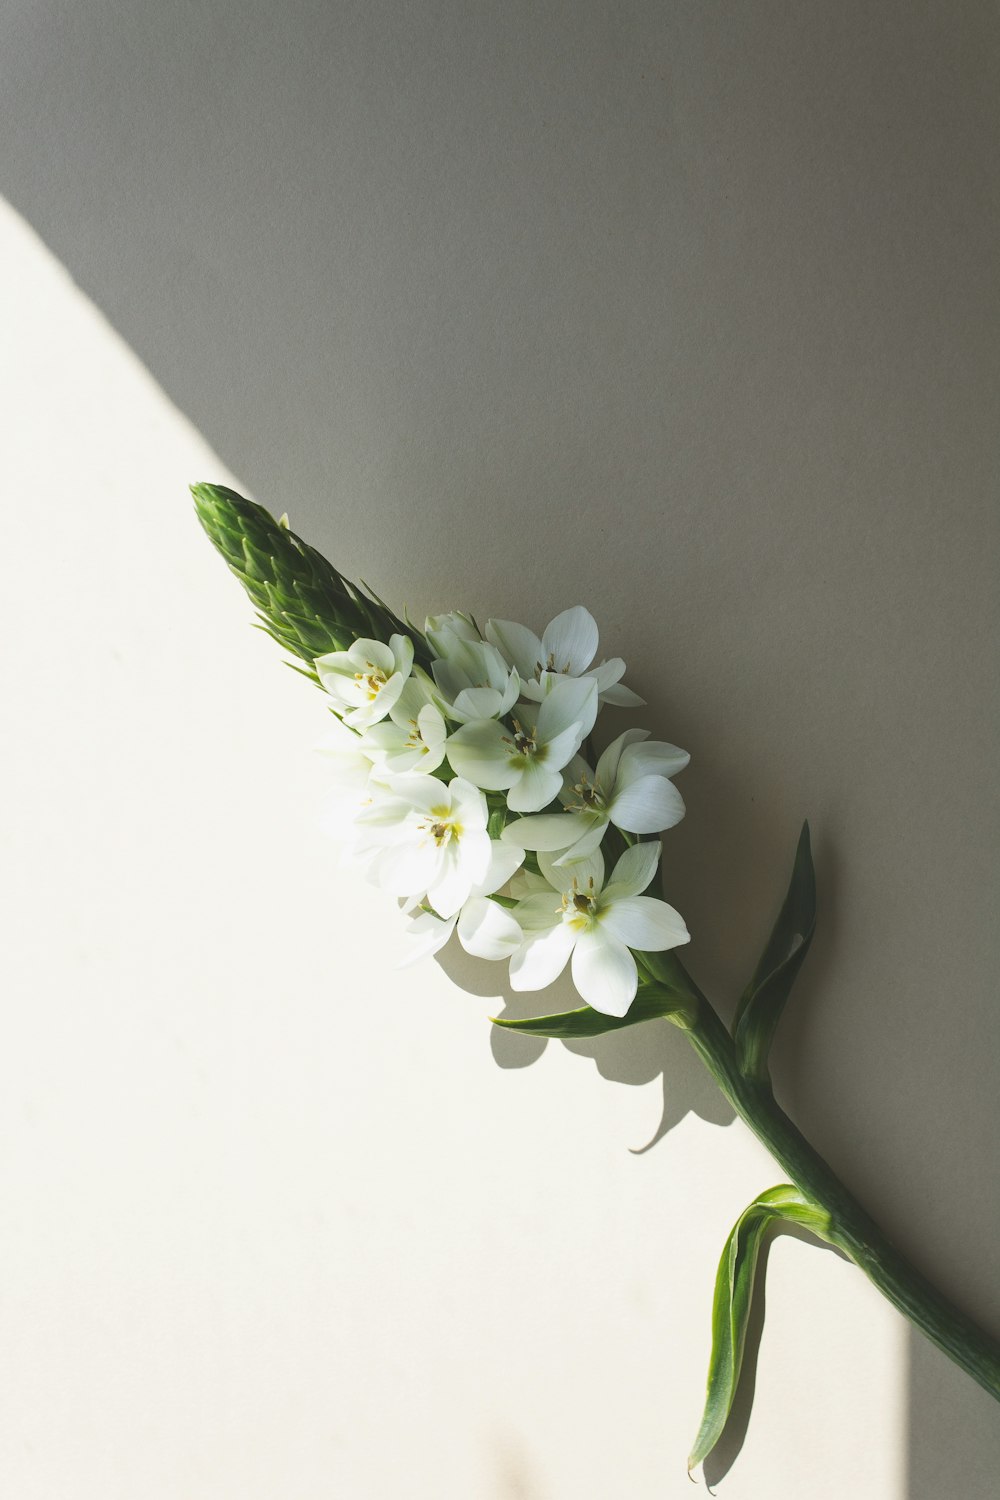 un fiore bianco con steli verdi su una superficie bianca